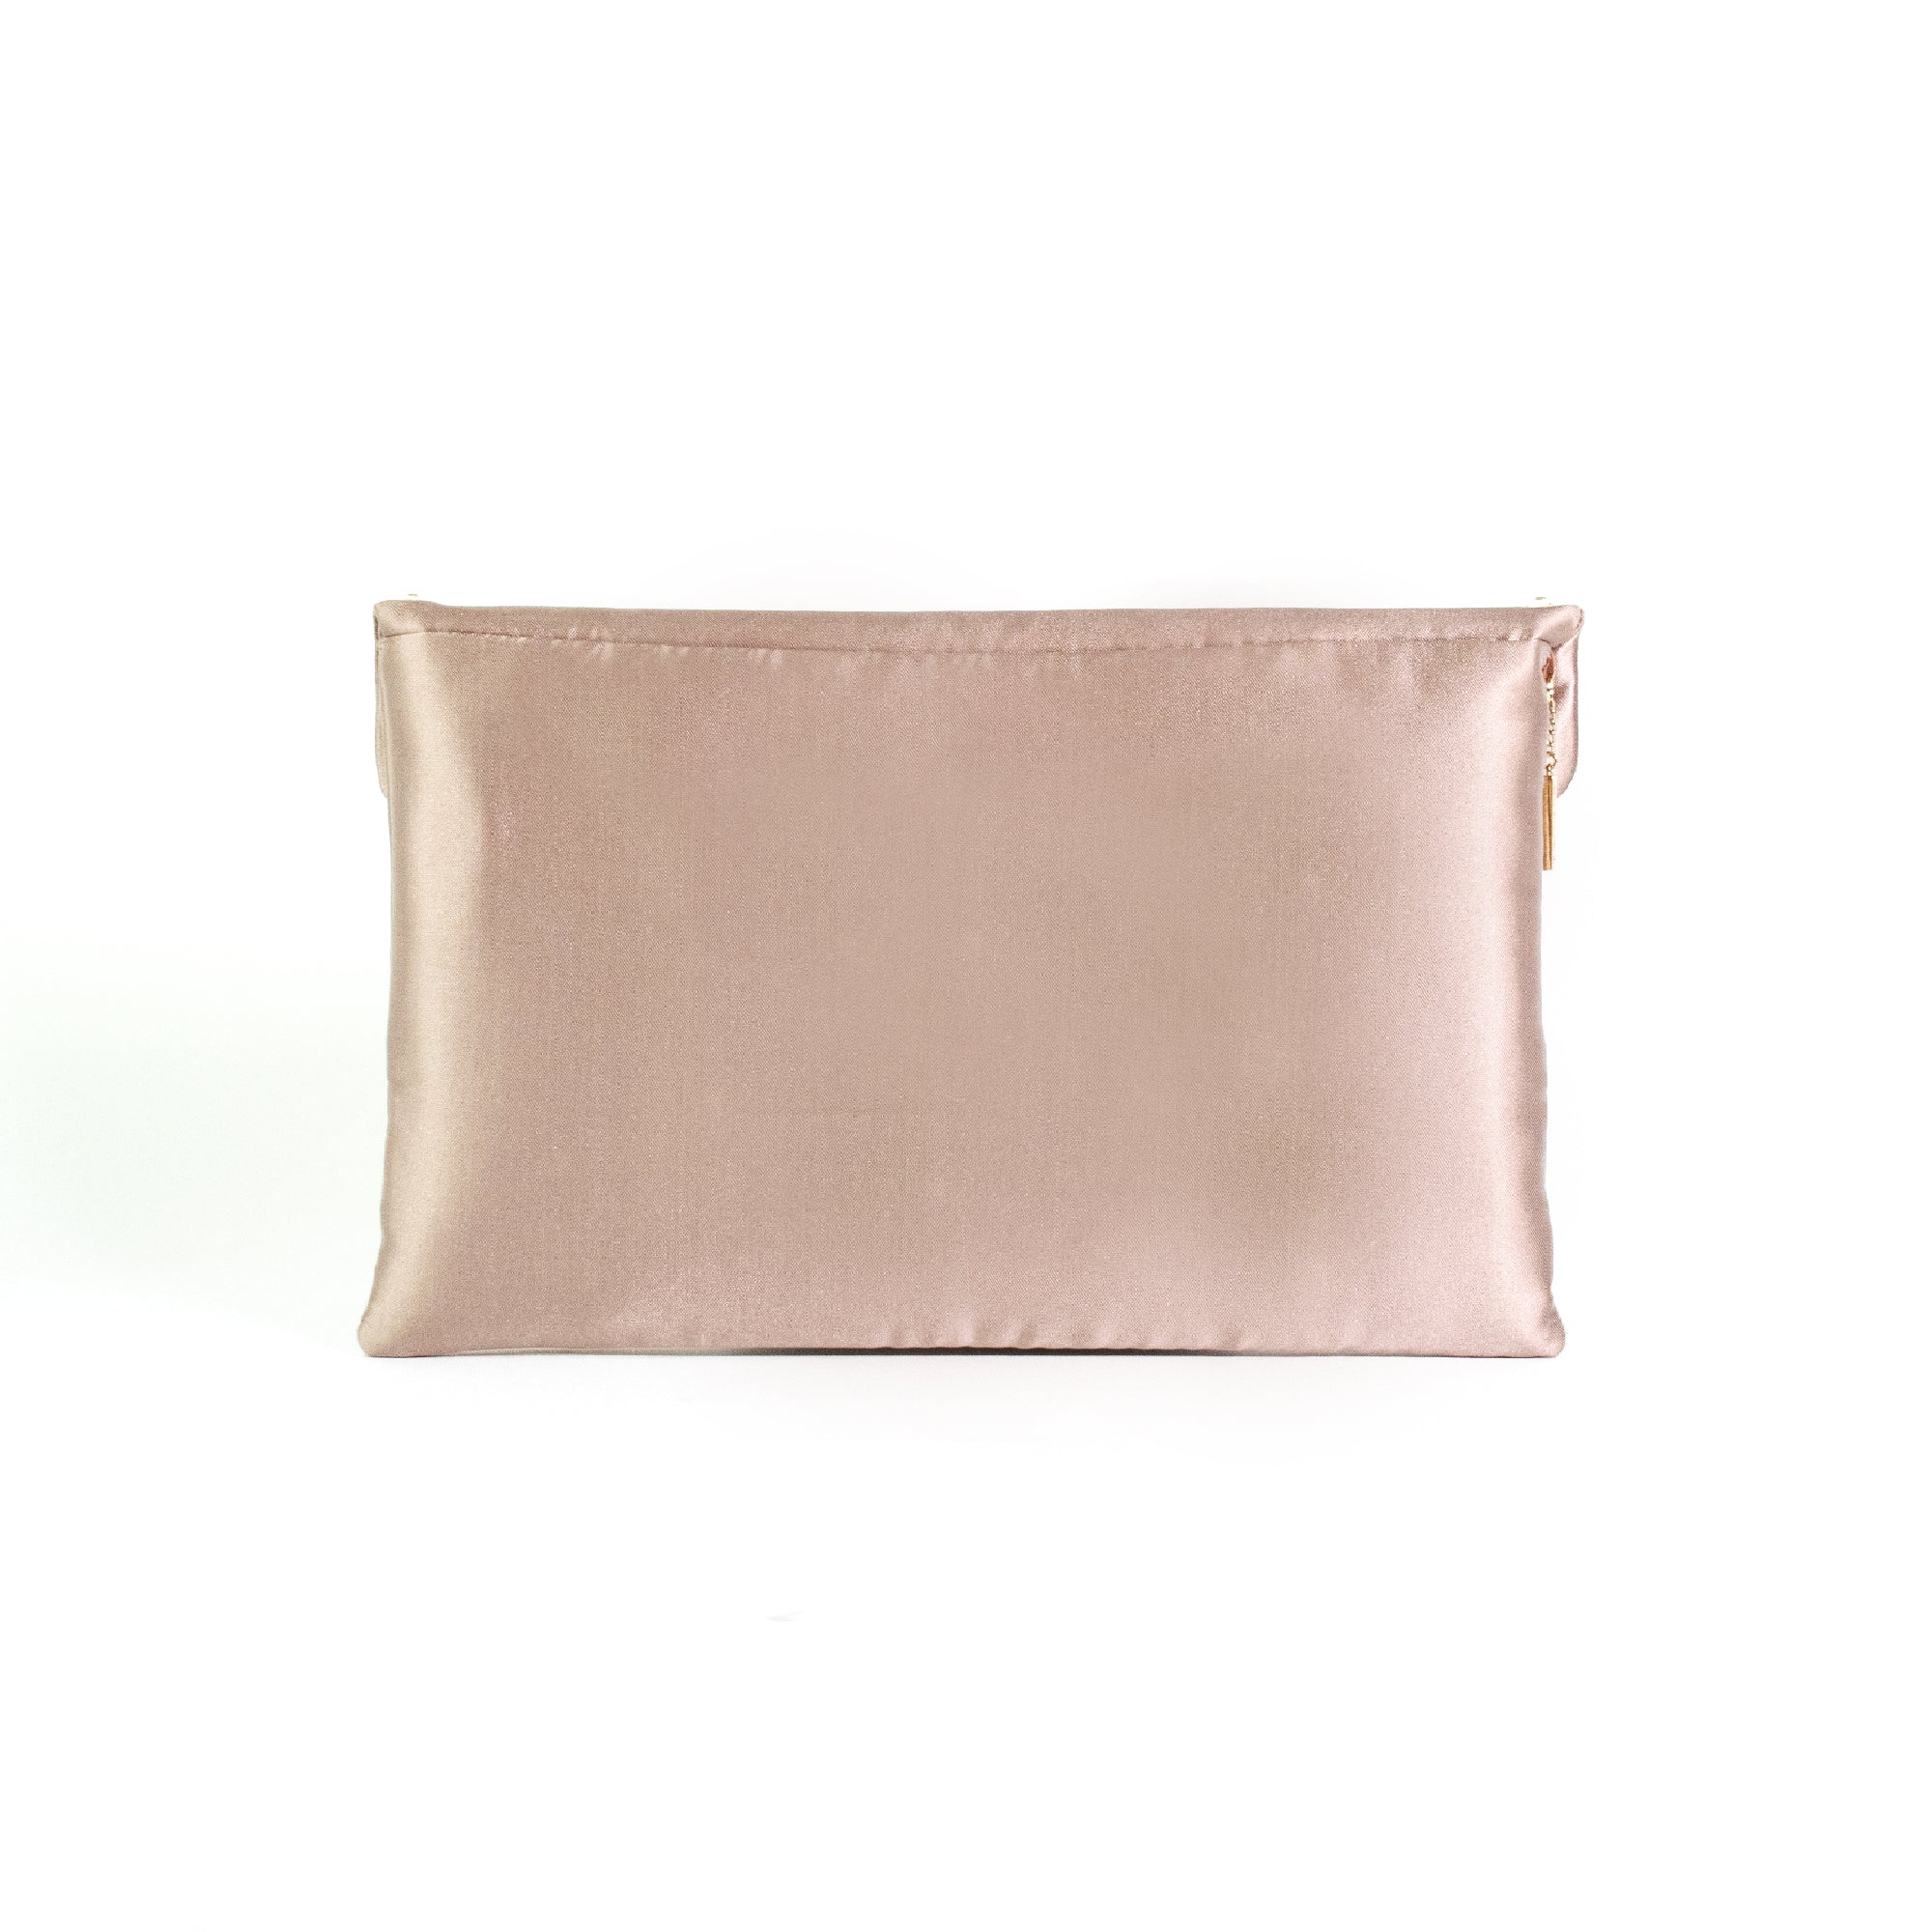 Powder pink clutch bag with Swarovski